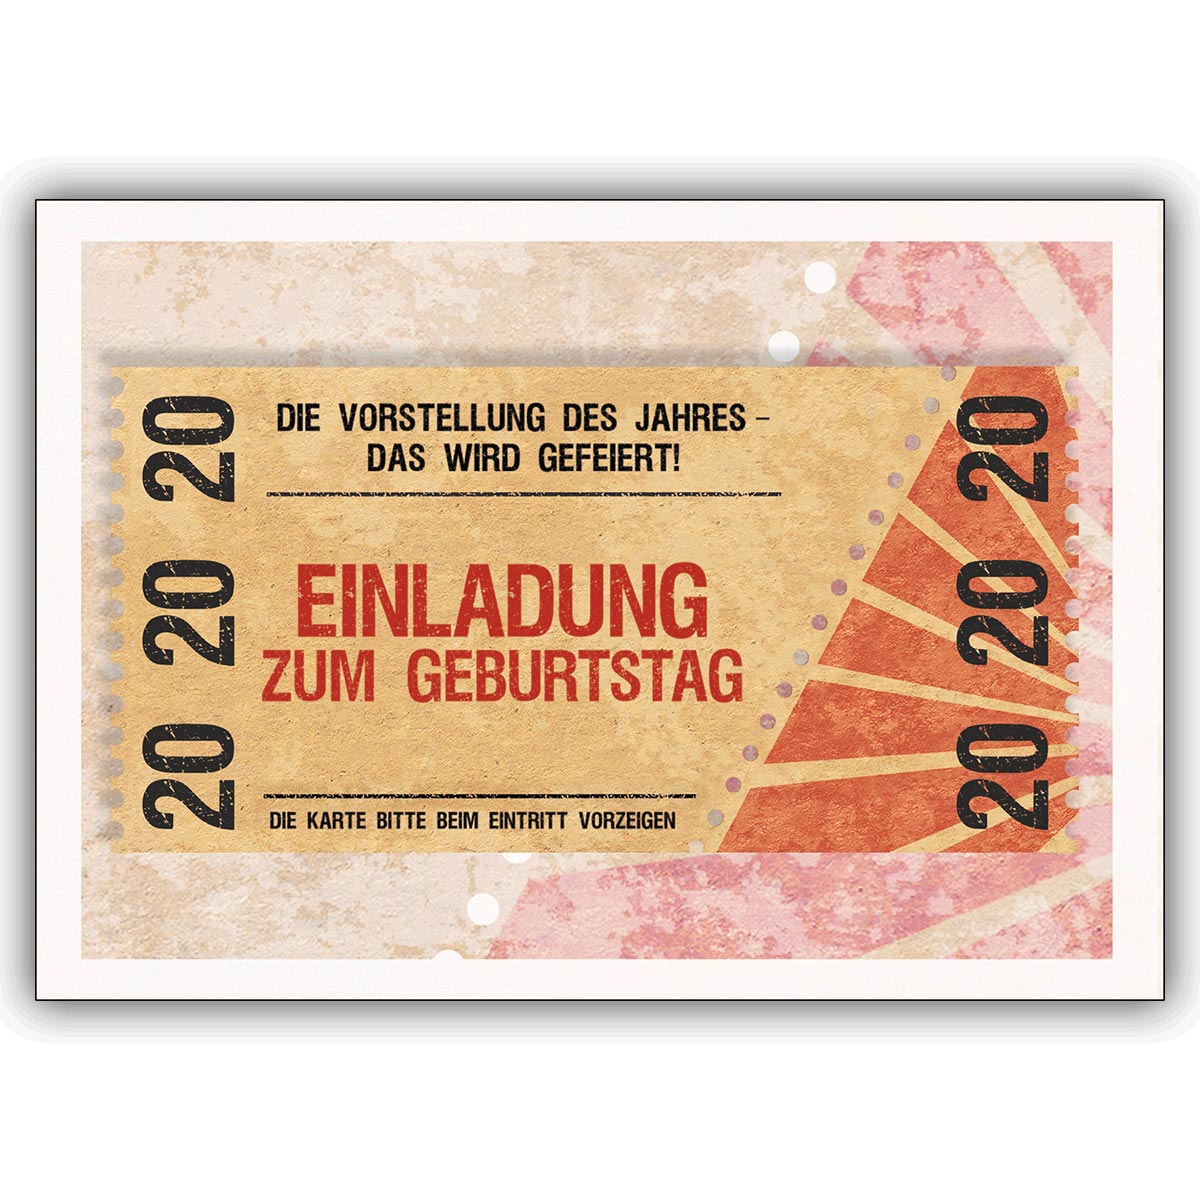 Lassige Party Einladungskarte Zum Geburtstag Im Coolen Ticket Look Kartenkaufrausch De